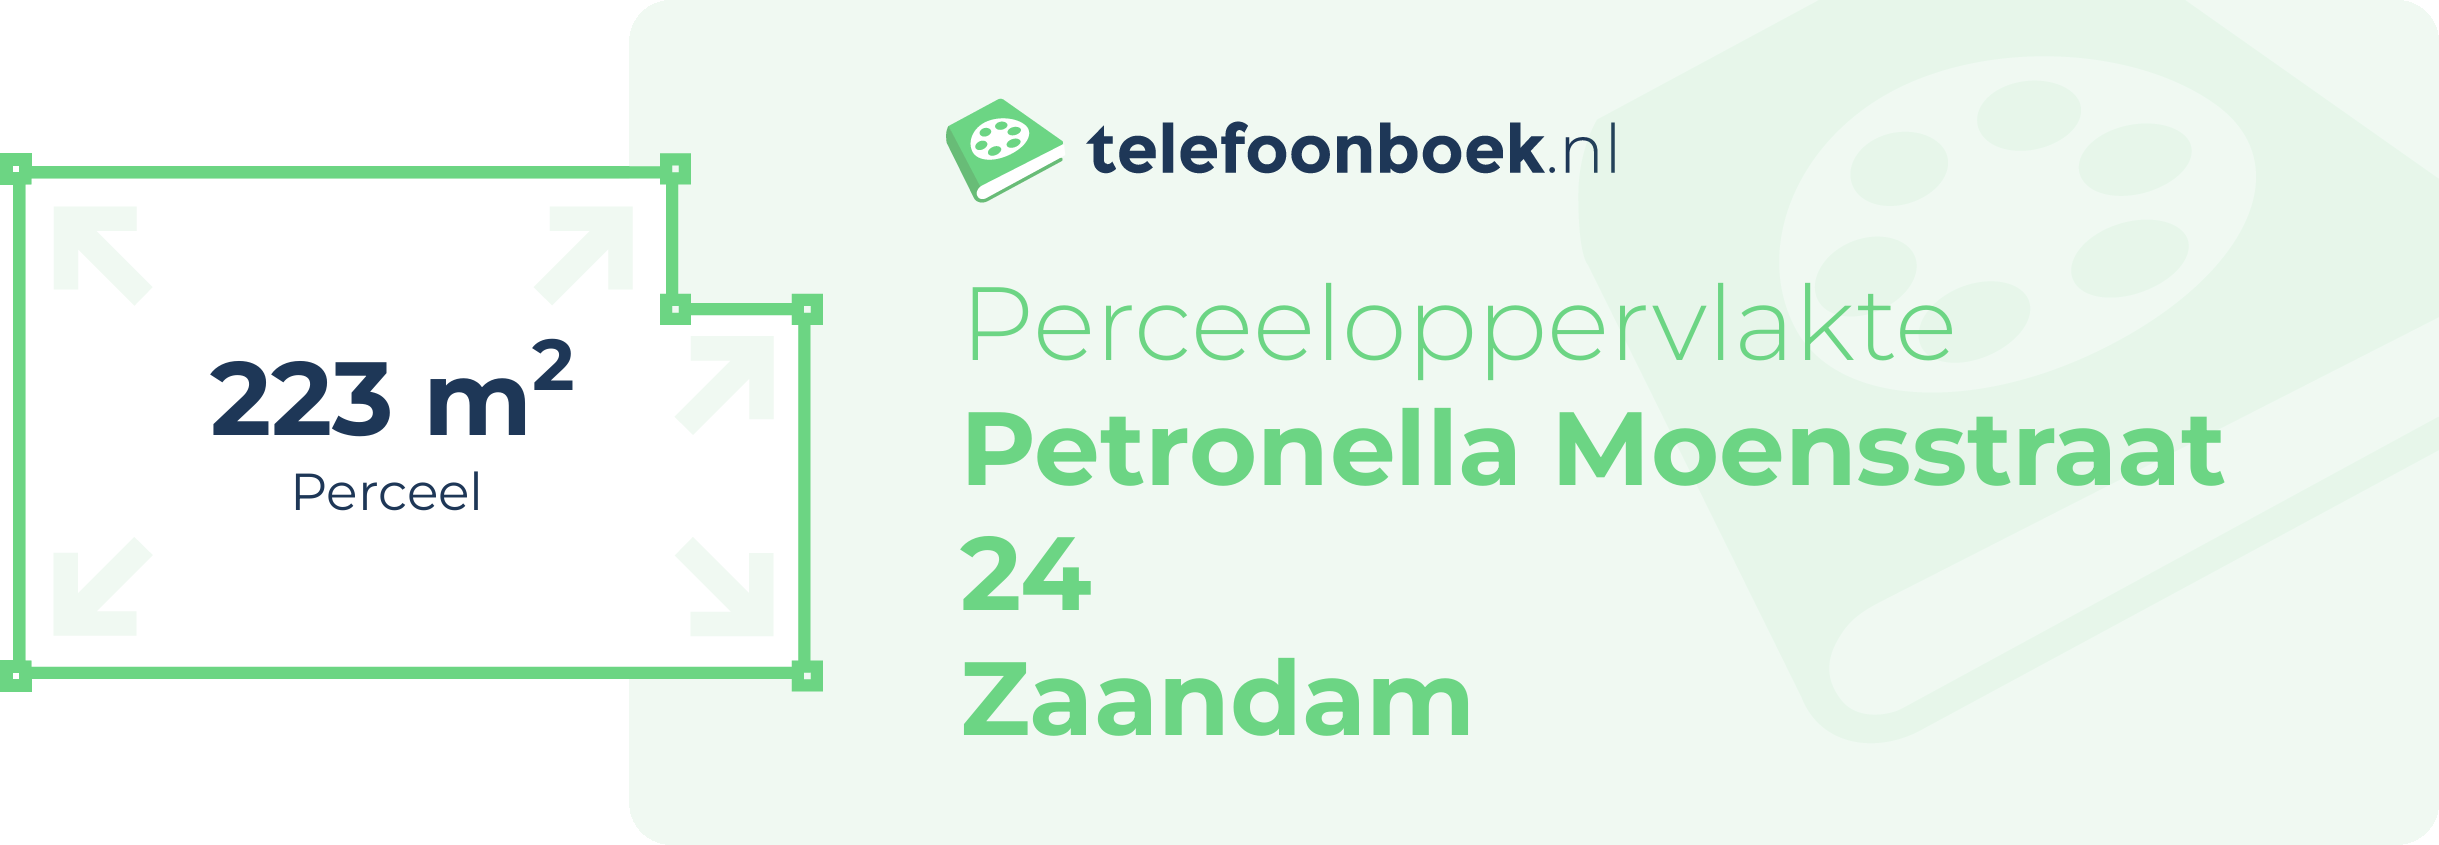 Perceeloppervlakte Petronella Moensstraat 24 Zaandam